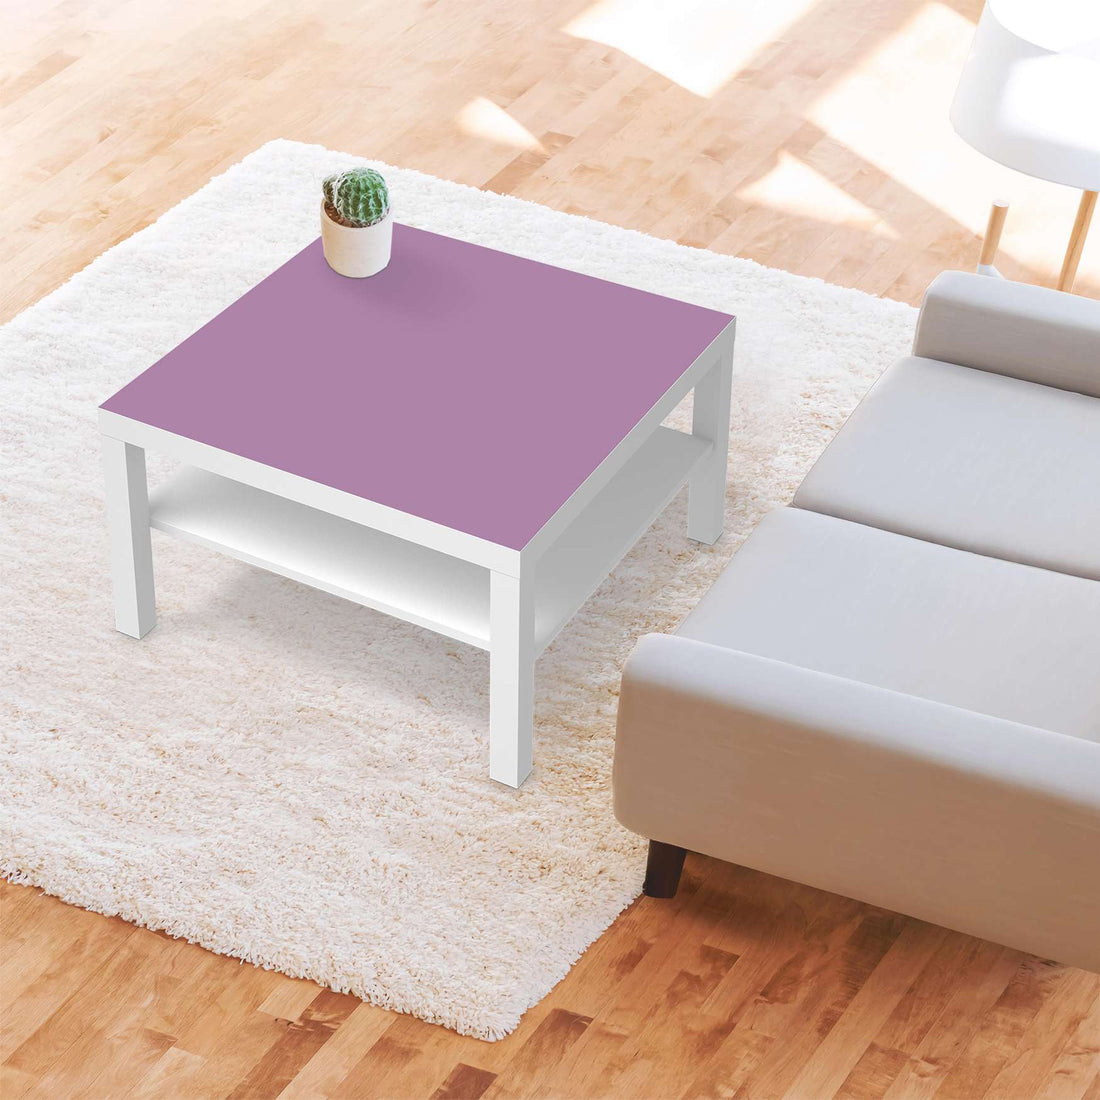 Selbstklebende Folie Flieder Light - IKEA Lack Tisch 78x78 cm - Wohnzimmer